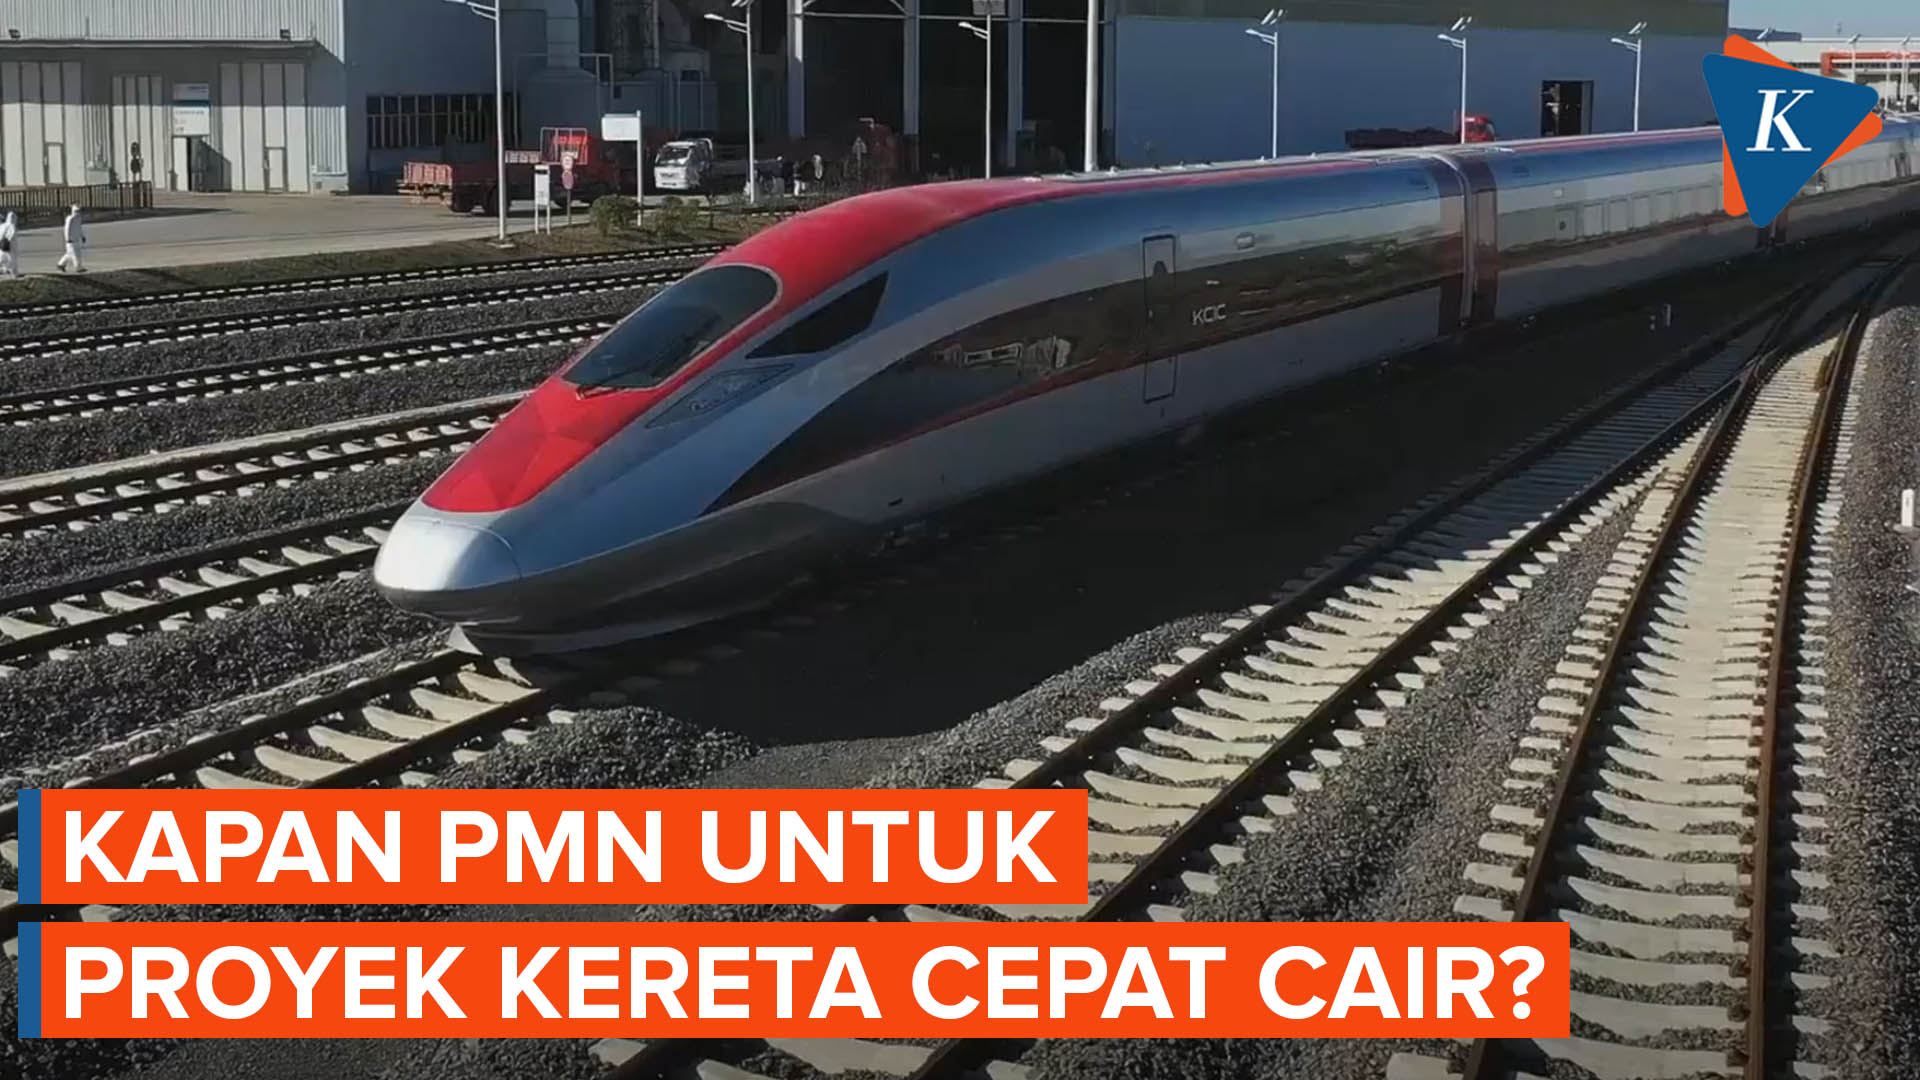 Menanti Cairnya PMN untuk Proyek Kereta Cepat Jakarta Bandung